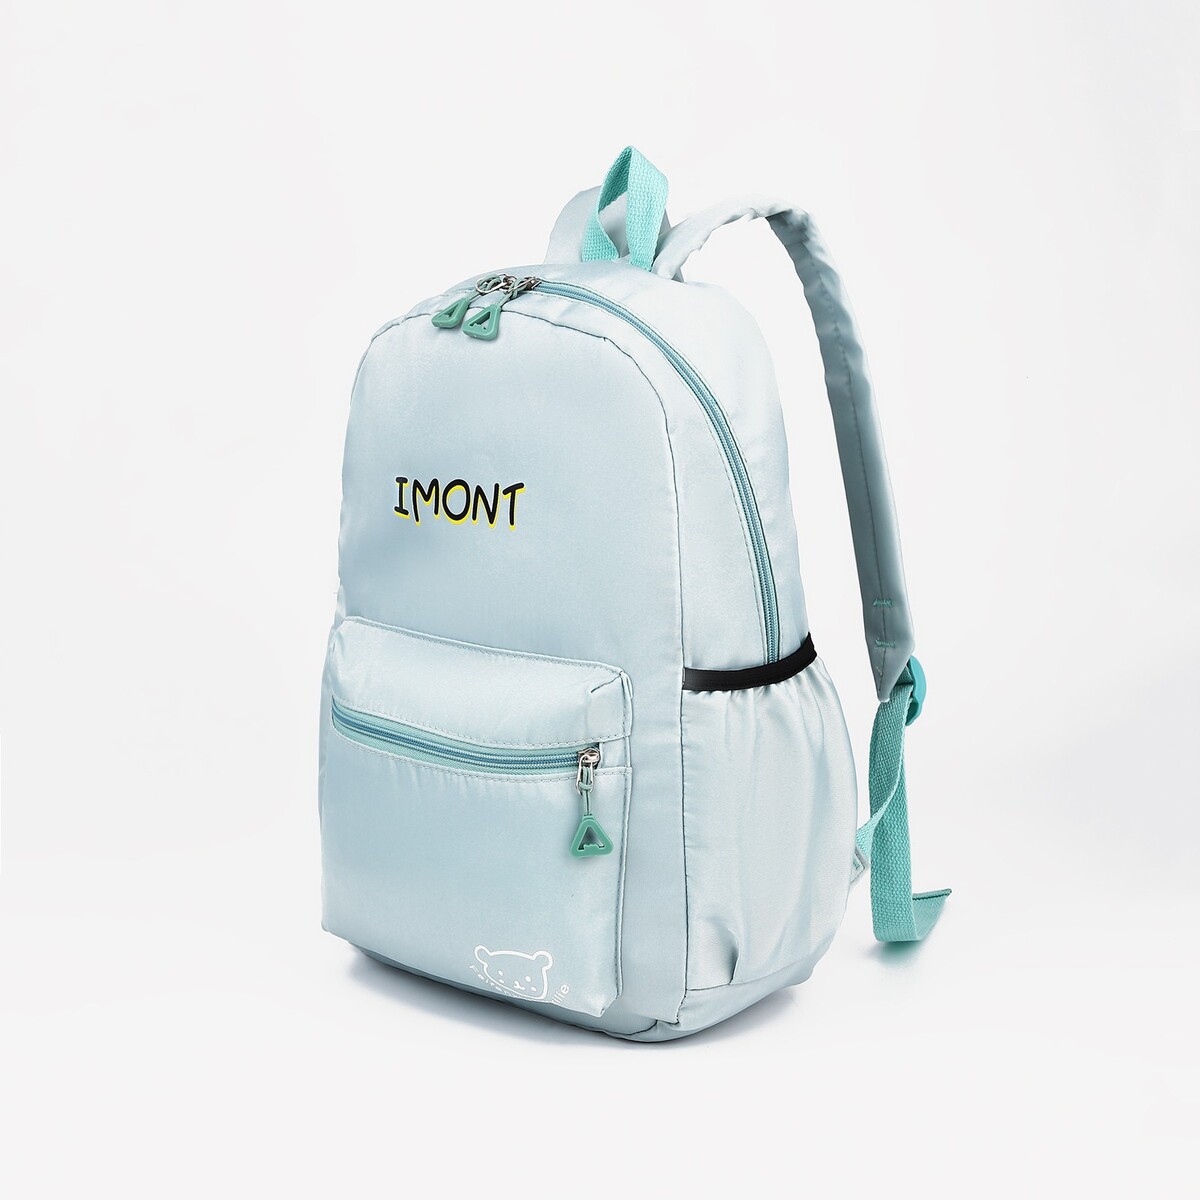 Рюкзак на молнии, 3 наружных кармана, цвет зеленый рюкзак школьный из текстиля 3 кармана бирюзовый